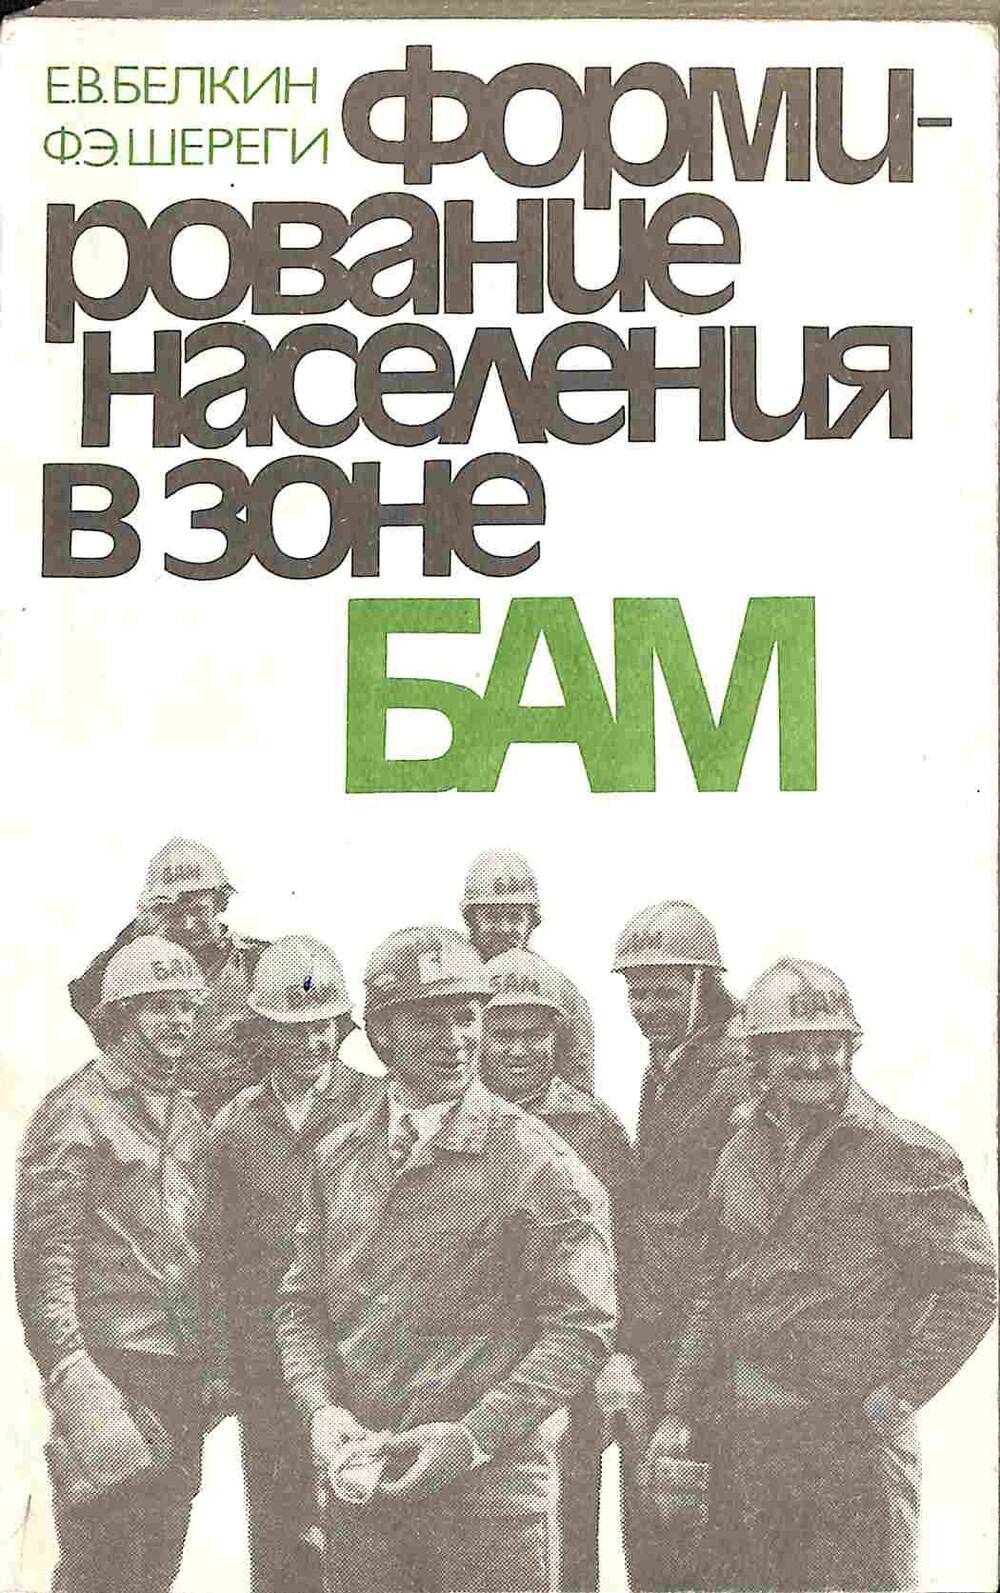 Книга. Е.В.Белкин, Ф.Э. Шереги. Формирование населения в зоне БАМ. Москва. 1985 год